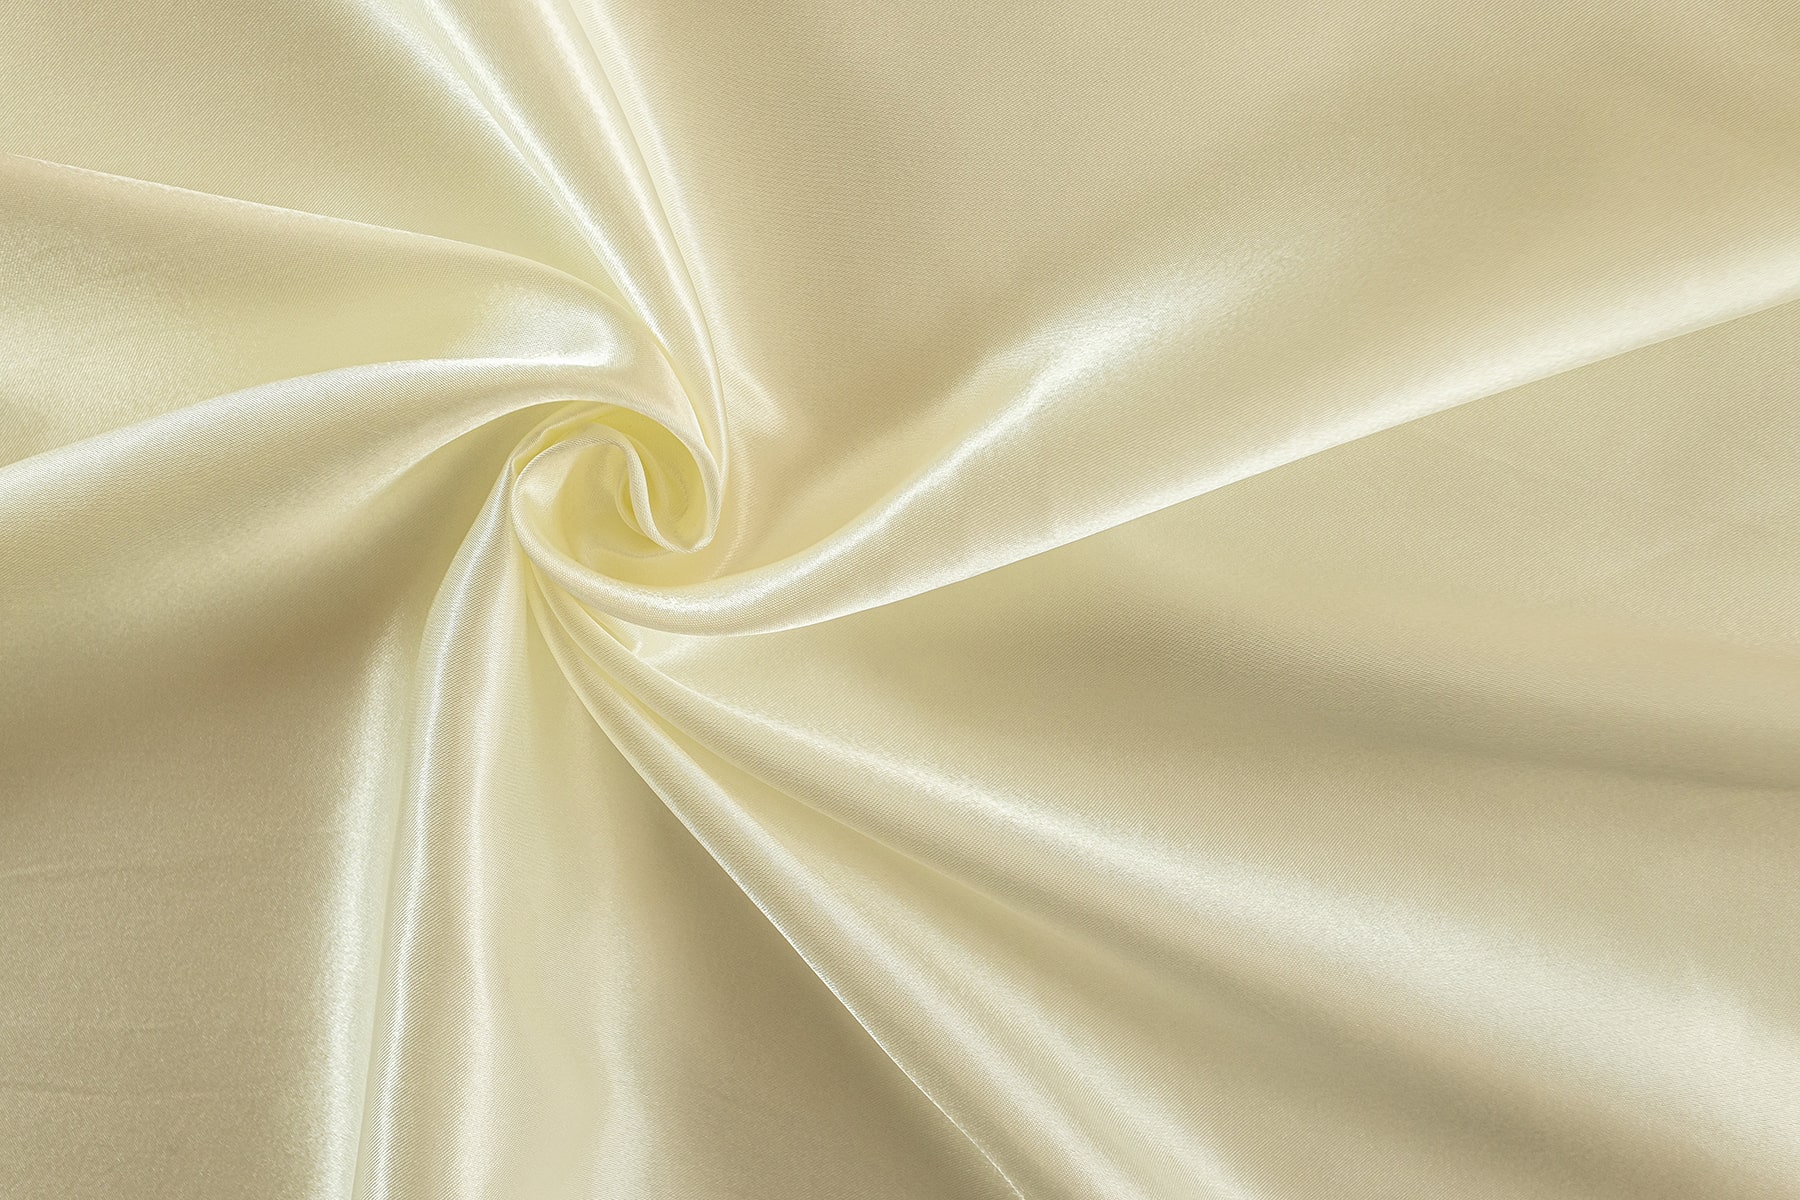 Cream colored silky satin cloth